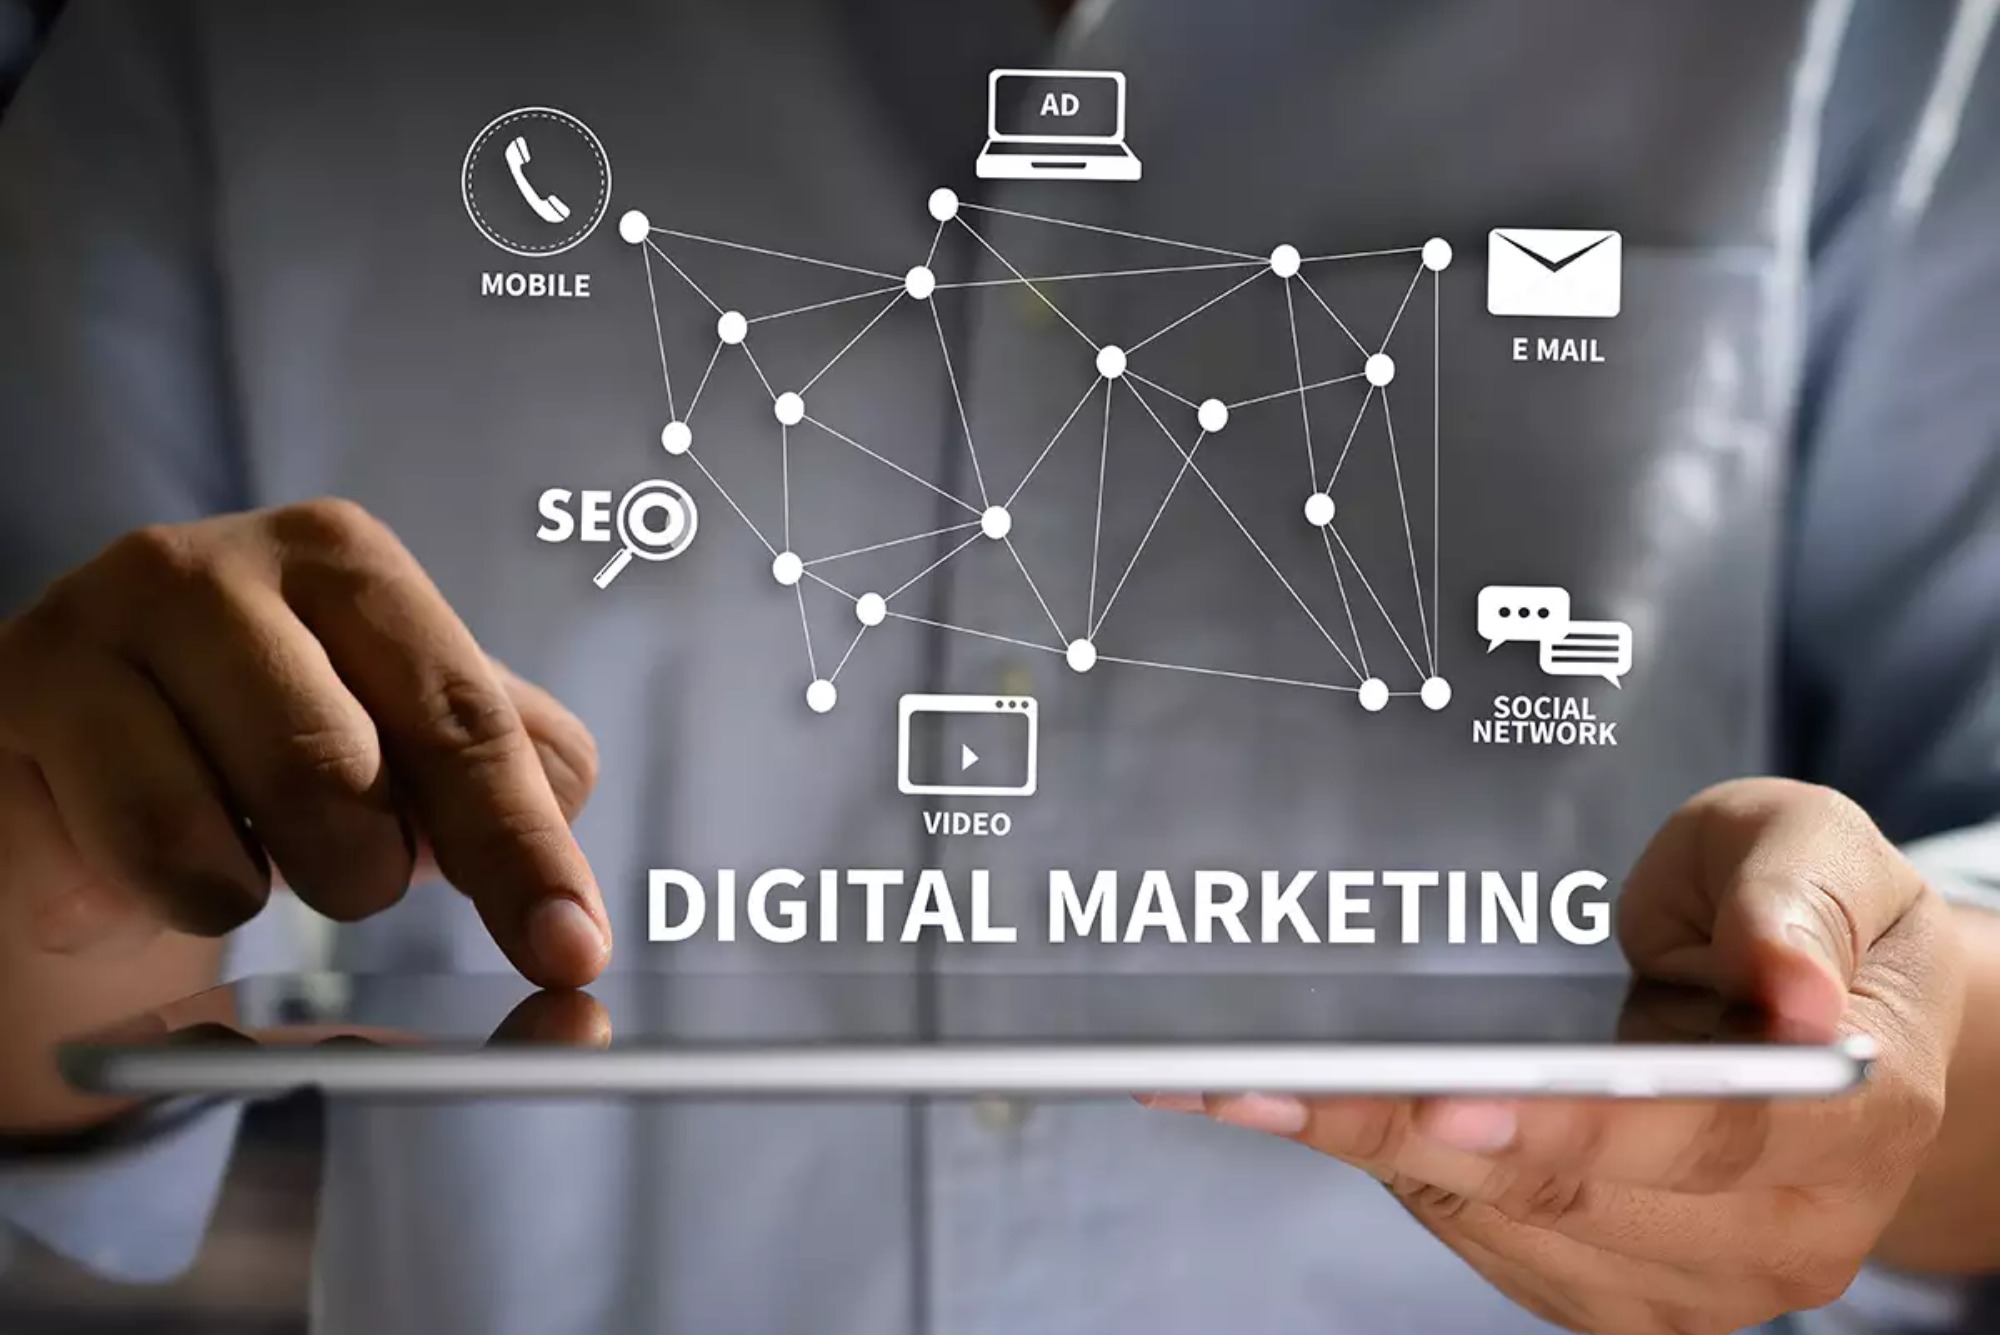 How to Do A Digital Marketing Course